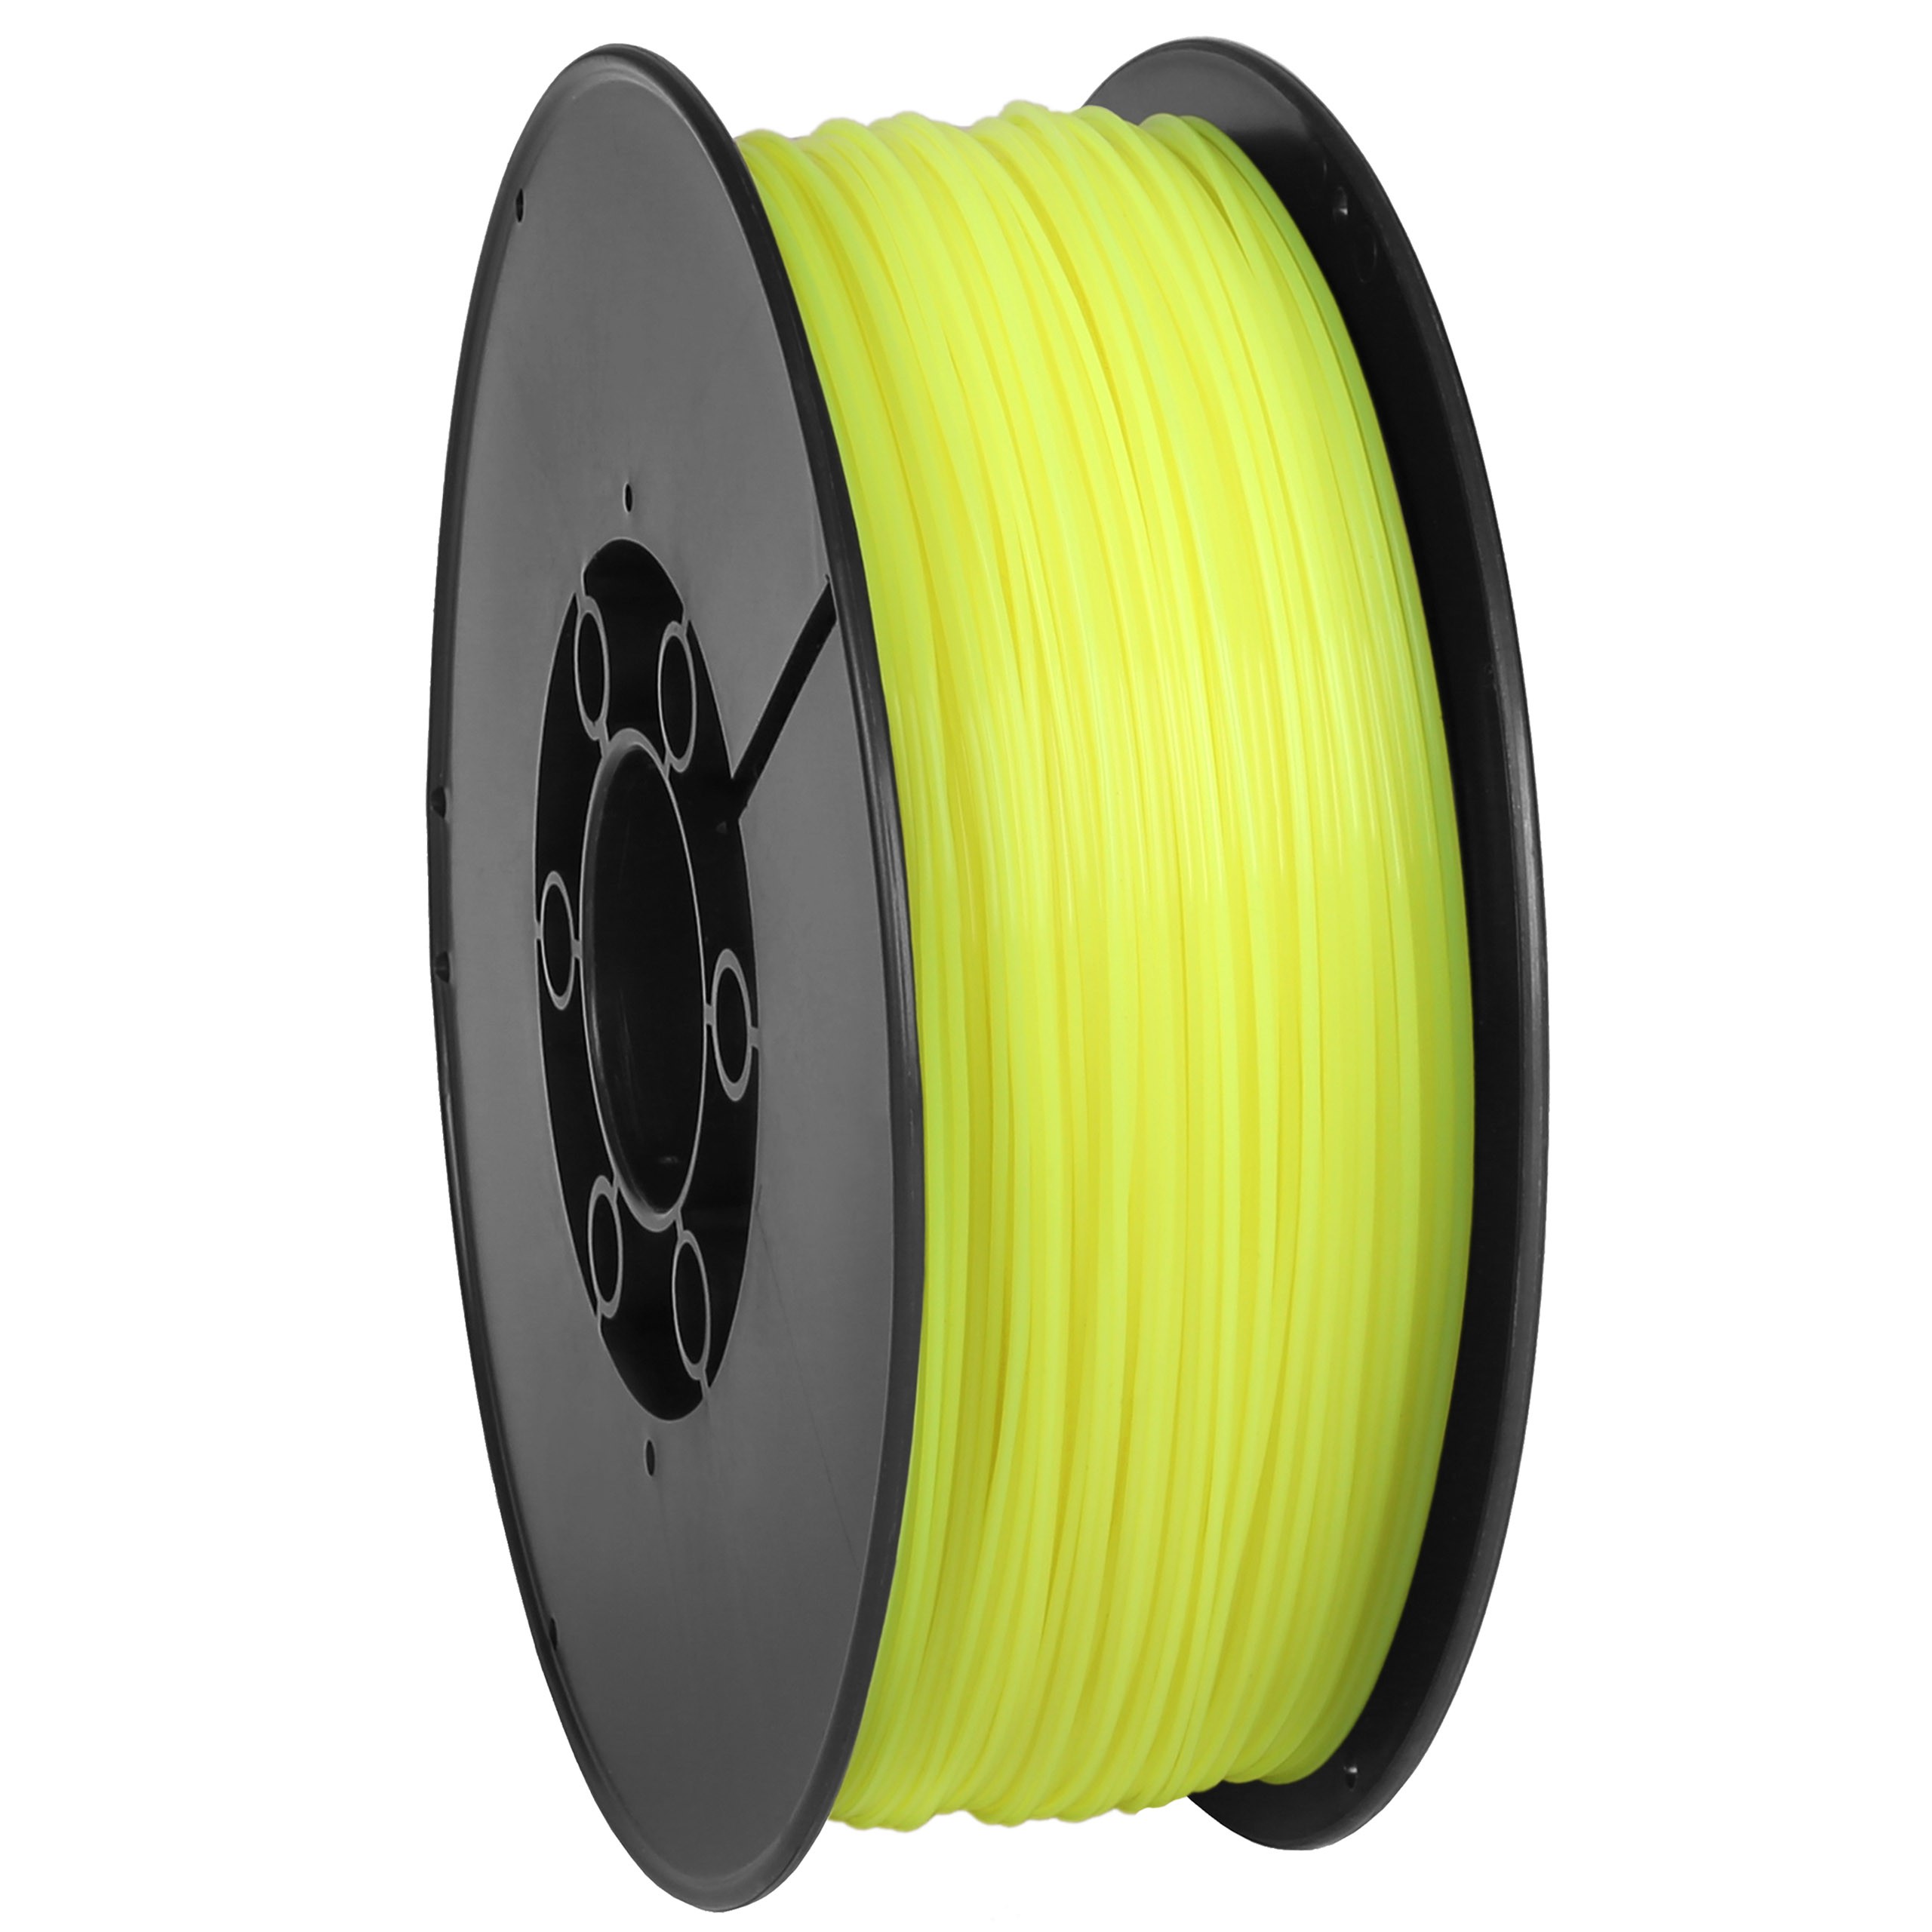 Filamento PLA di colore giallo neon 1,75 mm (filo) per stampanti 3D MADE IN  EU - Sarcia